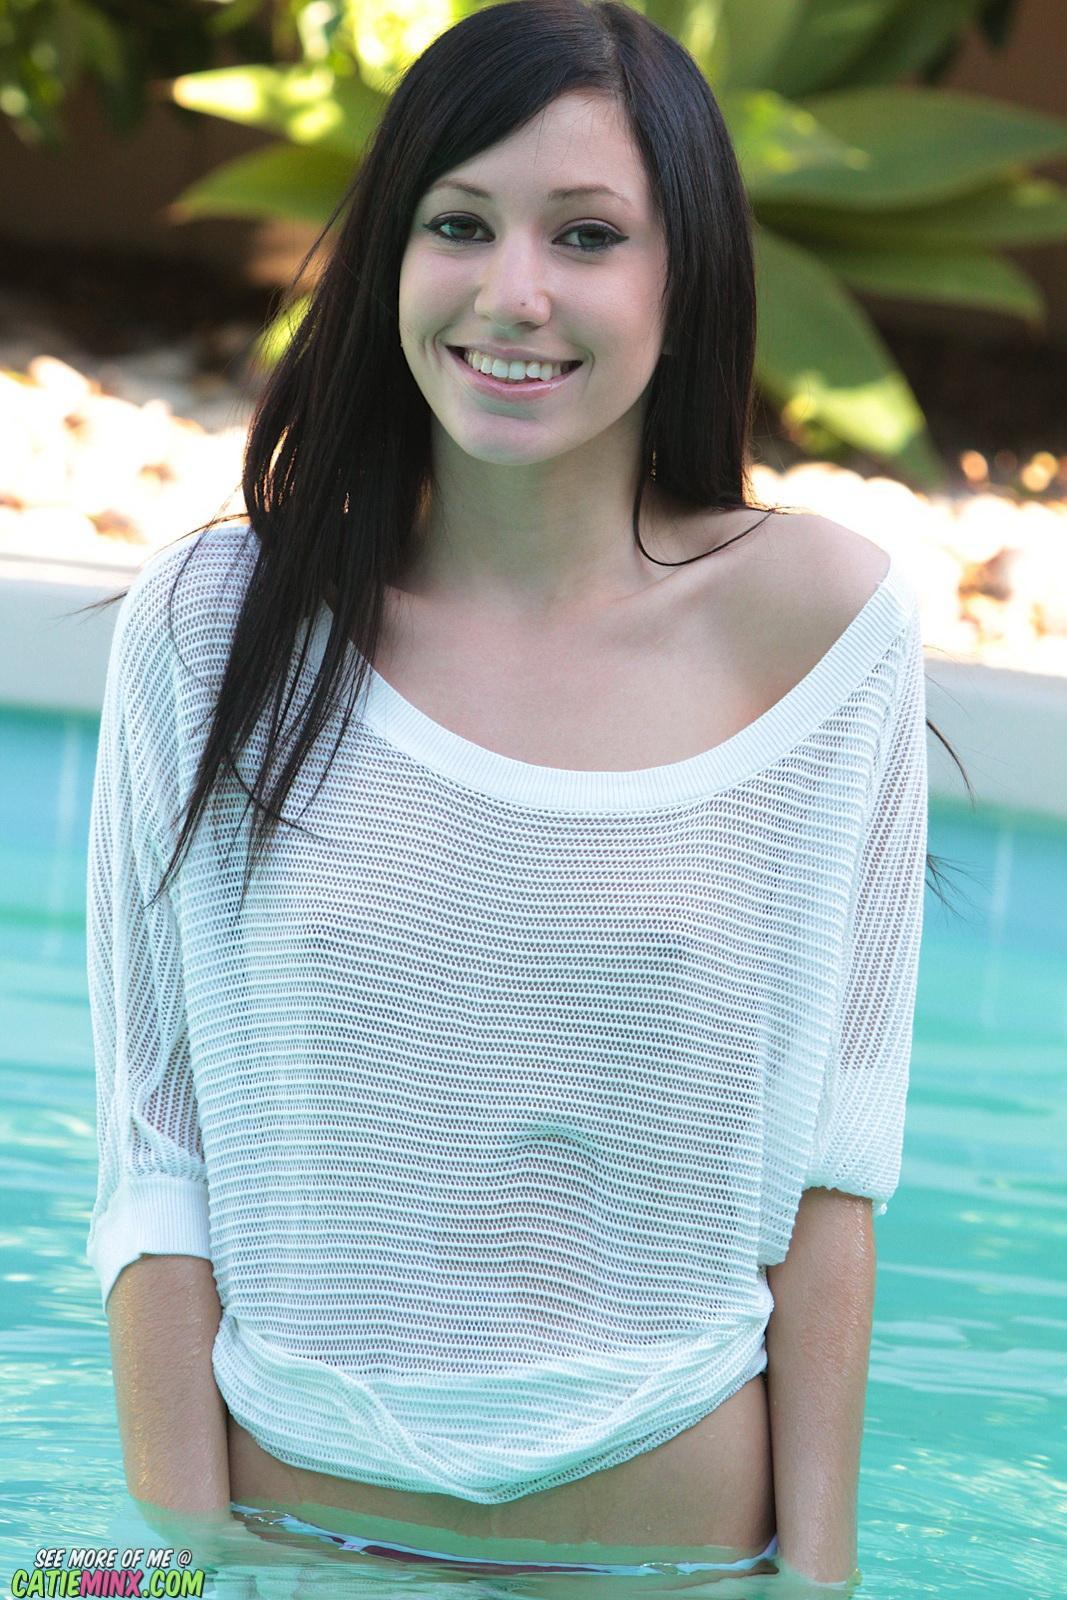 Catie Minx est si transparente qu'elle mouille sa couverture de piscine pour vous montrer ses jolis nichons.
 #53721055